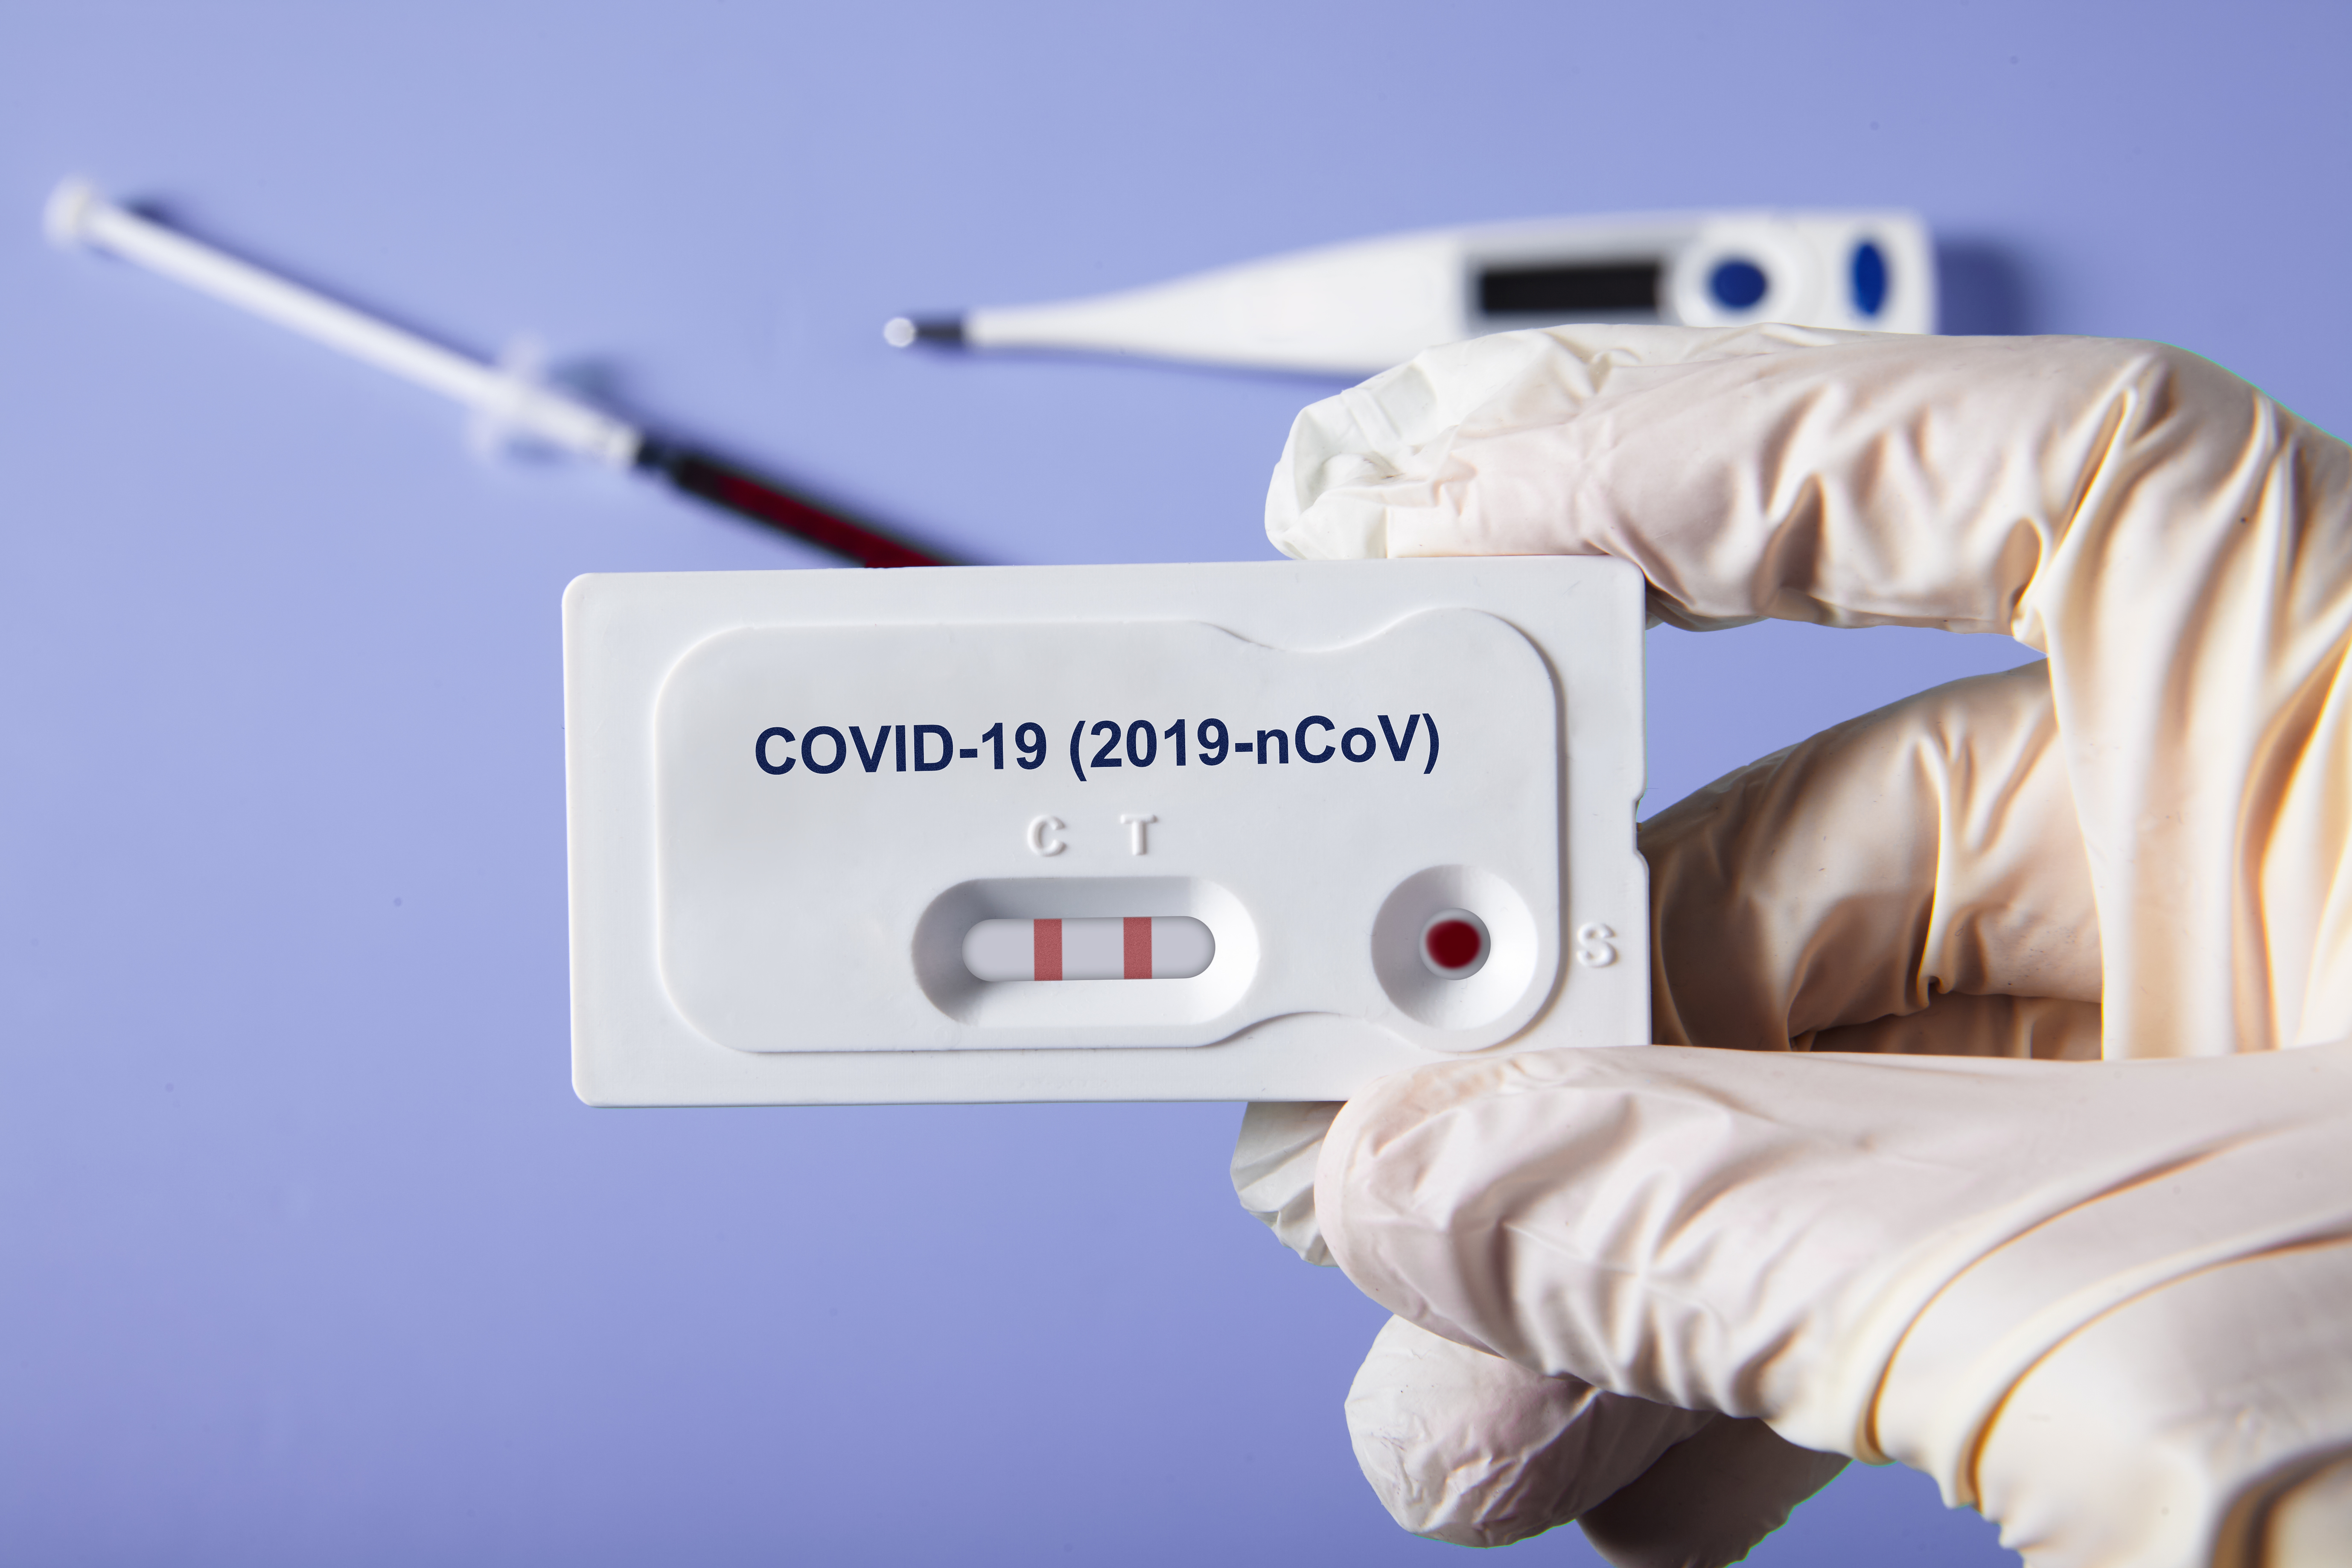     799 nouveaux cas : l'épidémie de Covid-19 décroît encore

